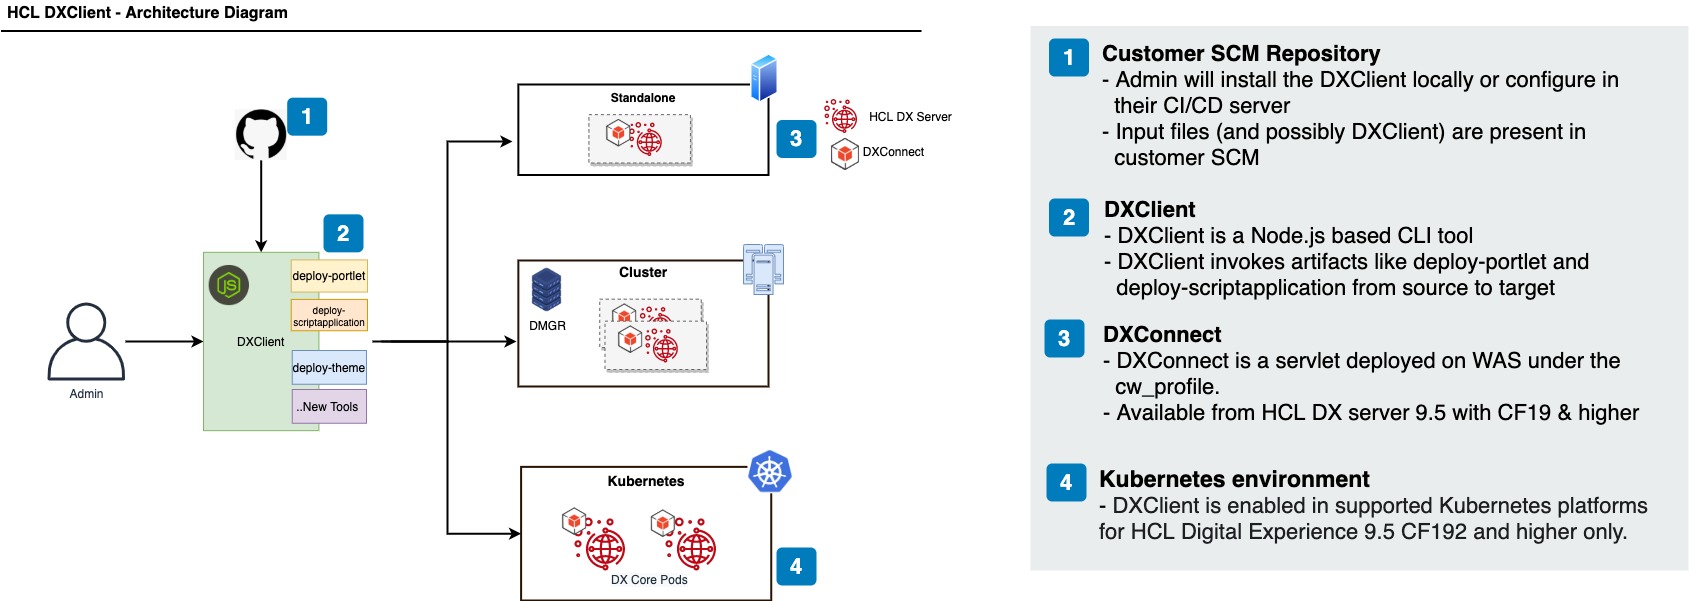 HCL DXClient Architecture diagram